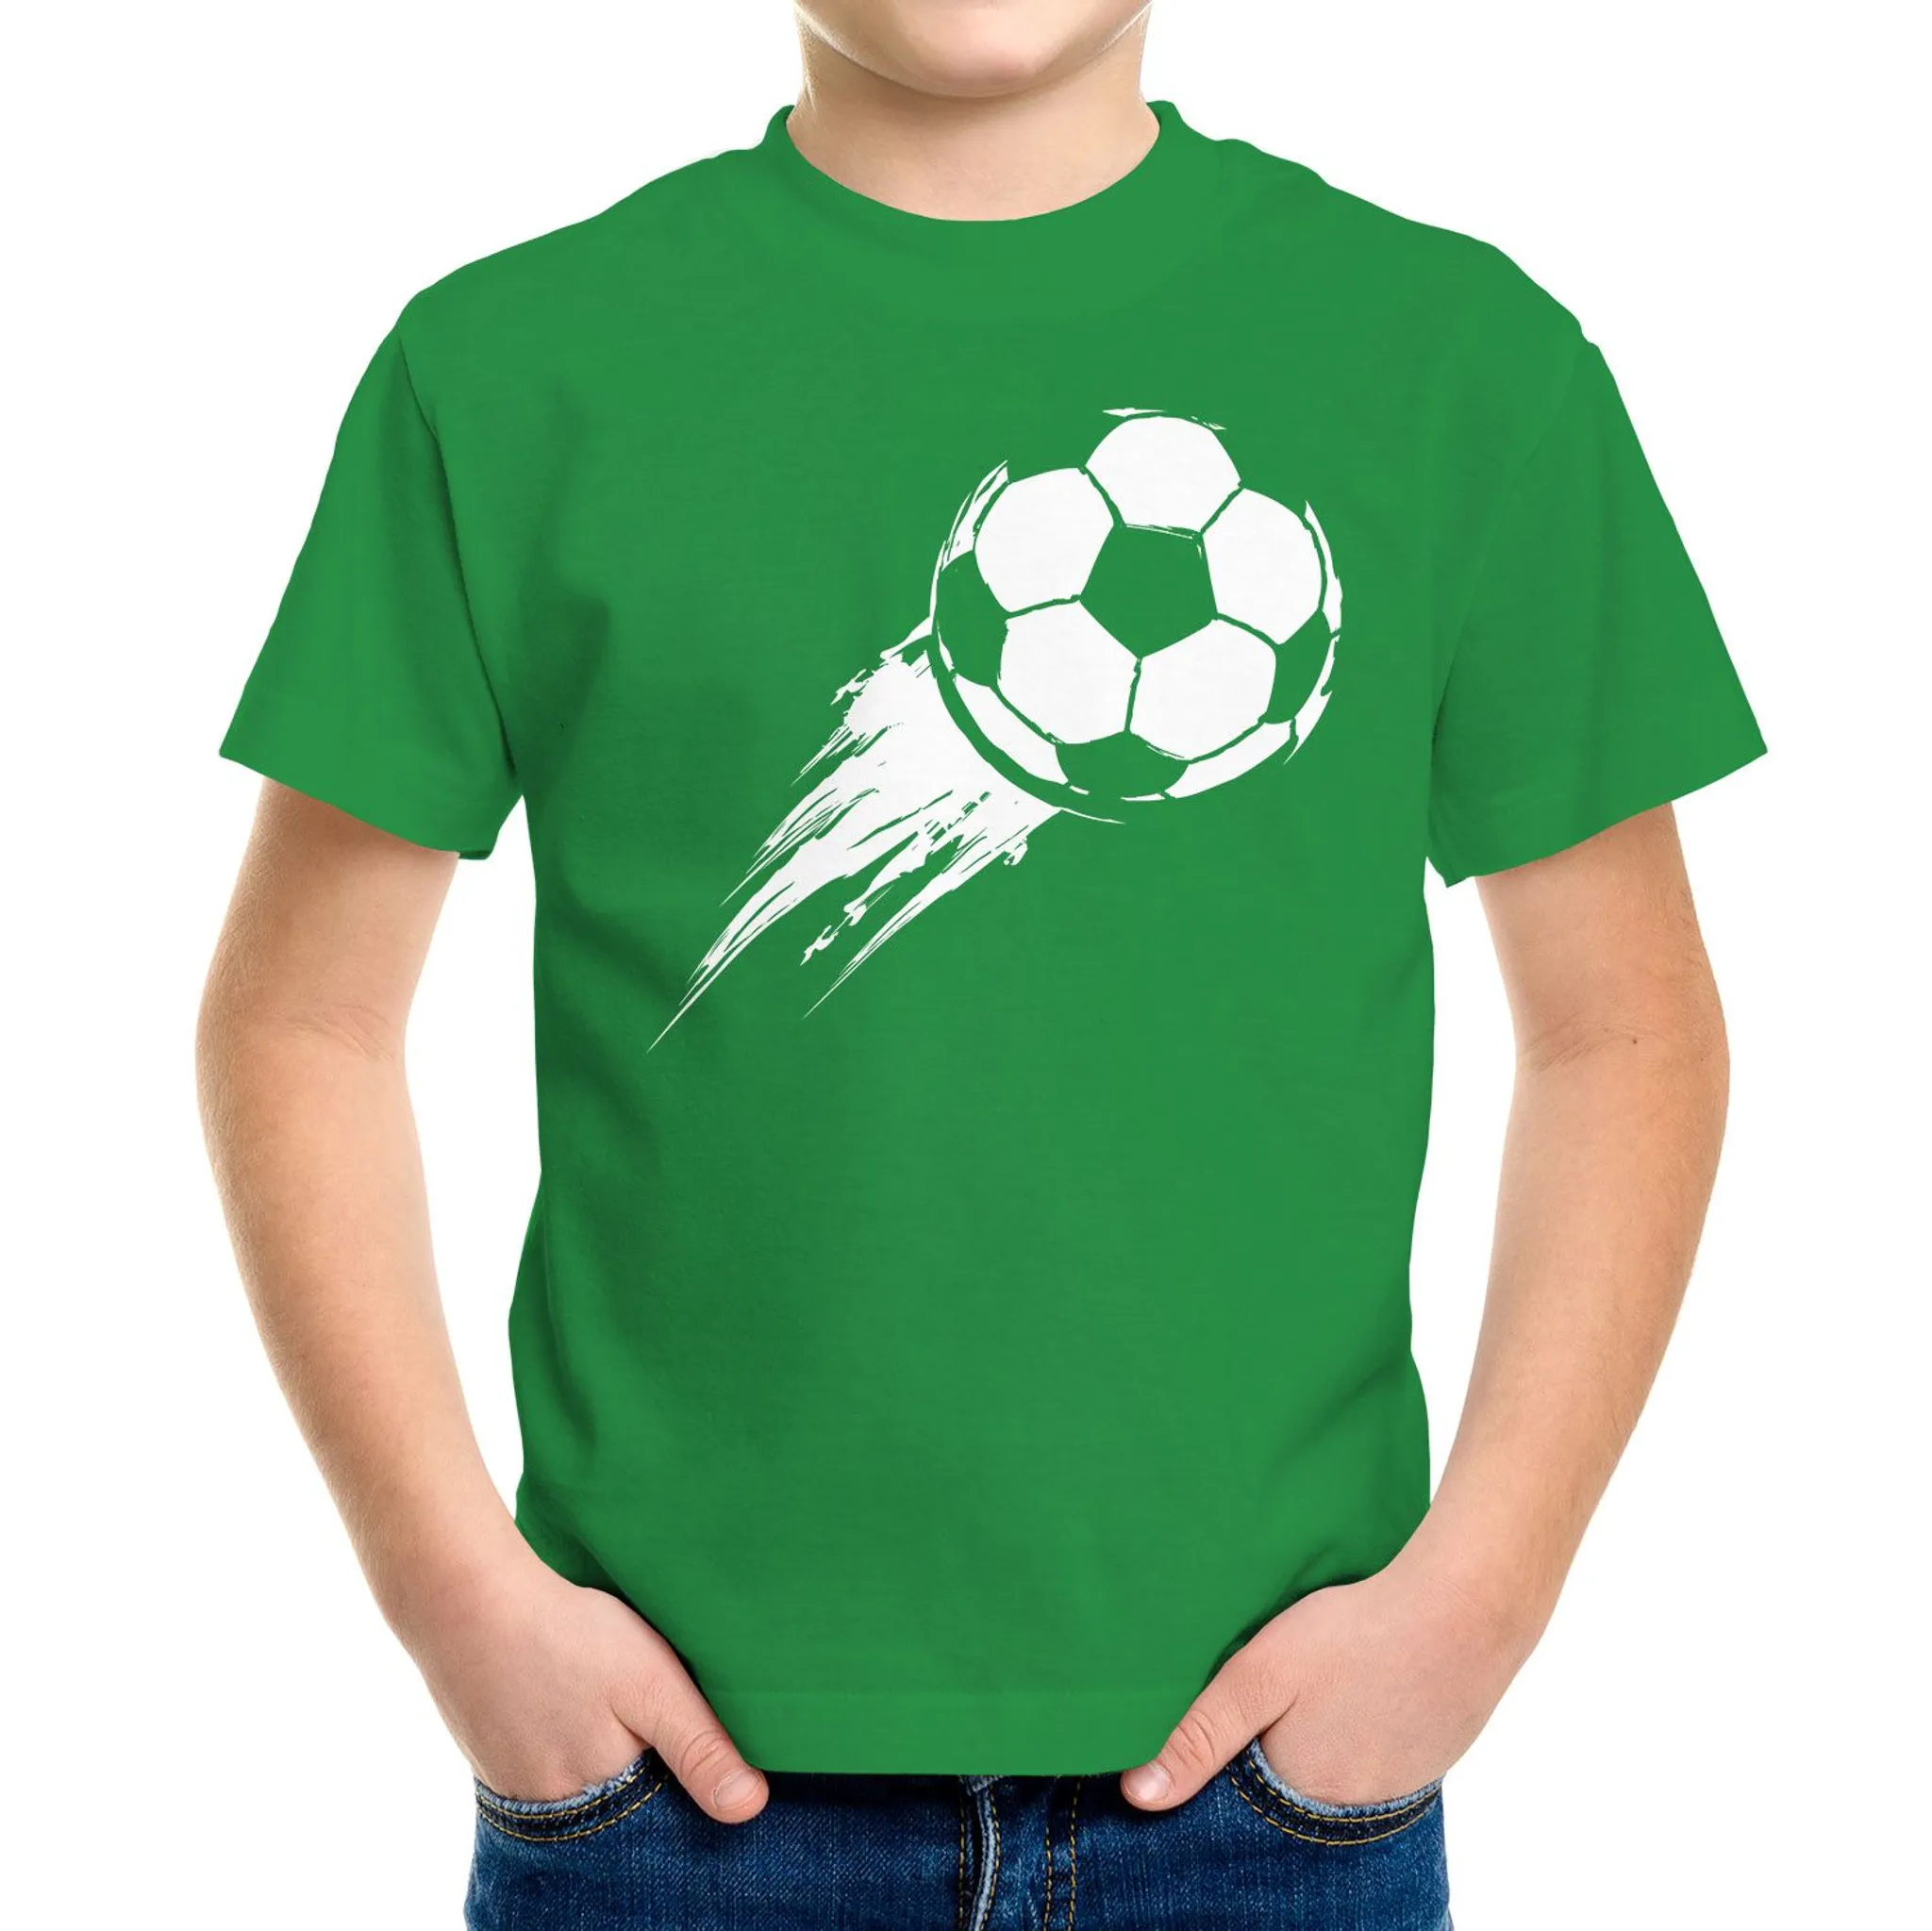 Kinder T-Shirt Jungen Fußball-Motiv